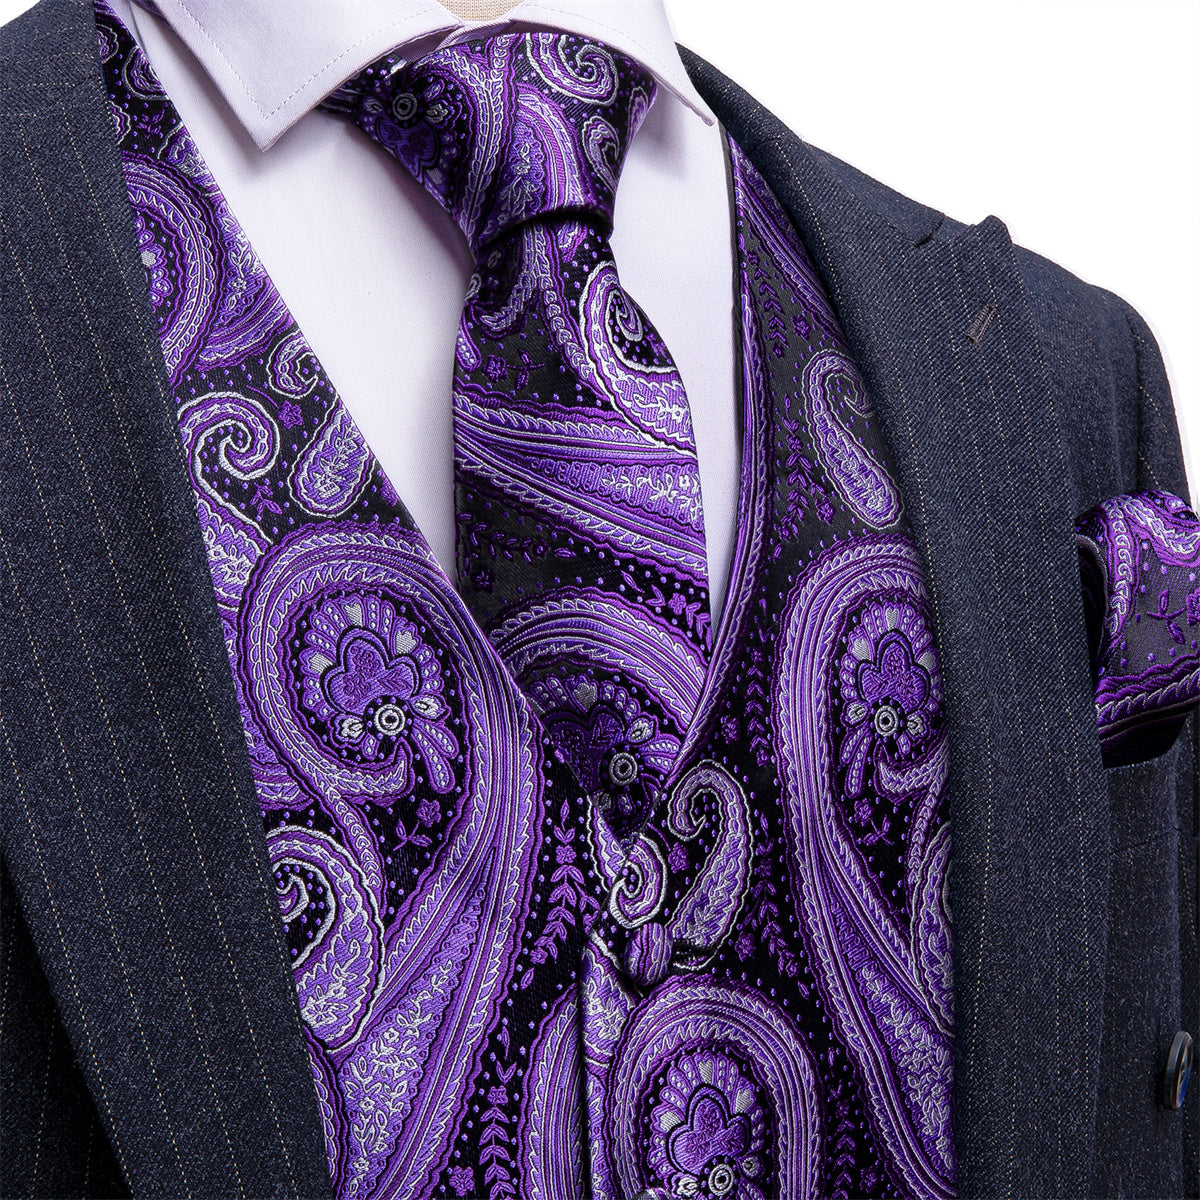 Black suit dark purple paisley suit with vest